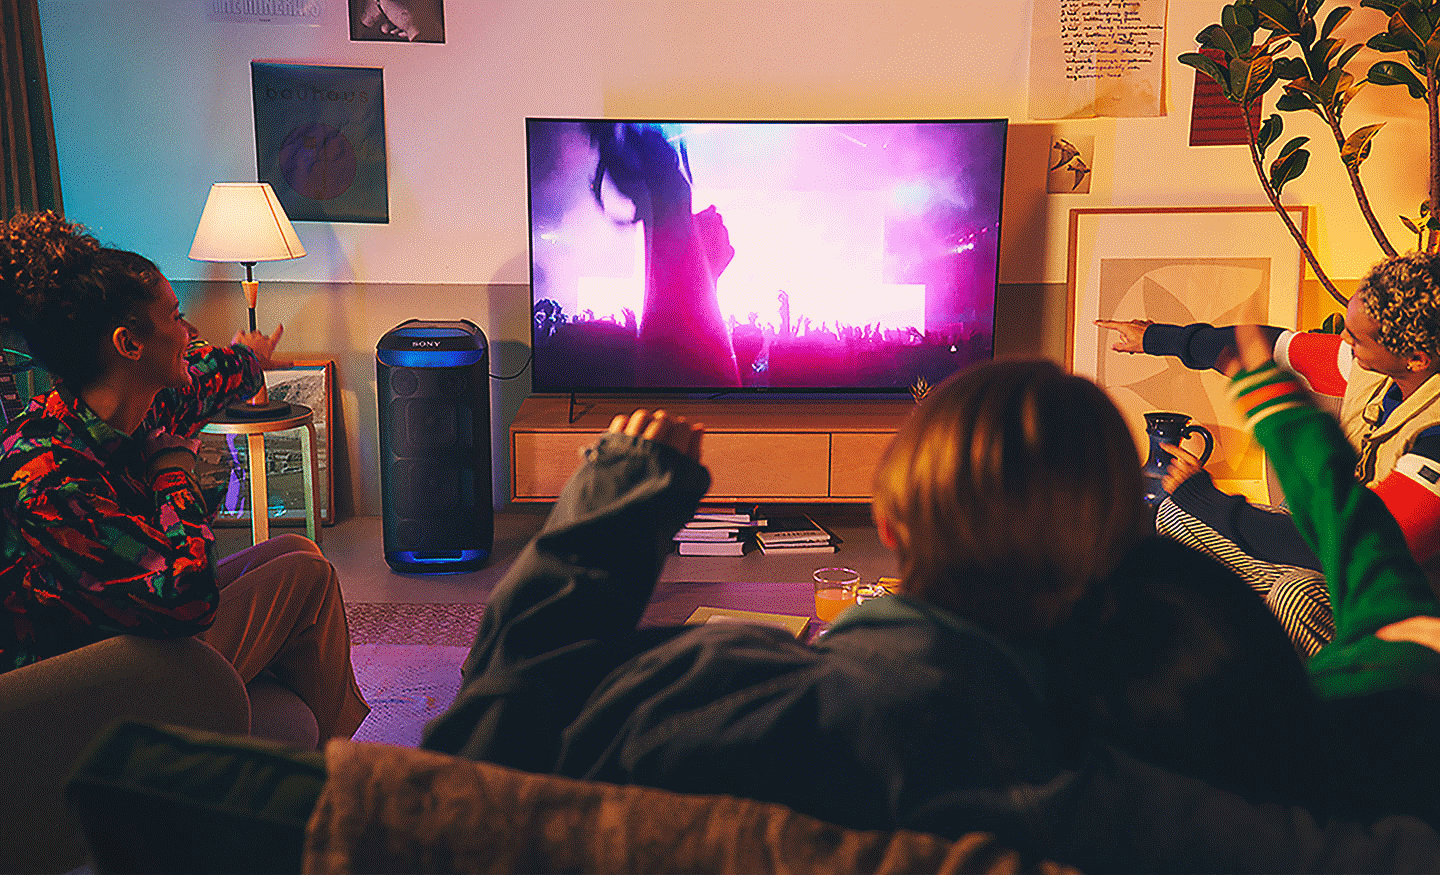 Slika ljudi u dnevnoj sobi, na televizoru se prikazuje koncert, kraj njega je zvučnik SRS-XV800 s plavim ambijentalnim svjetlom